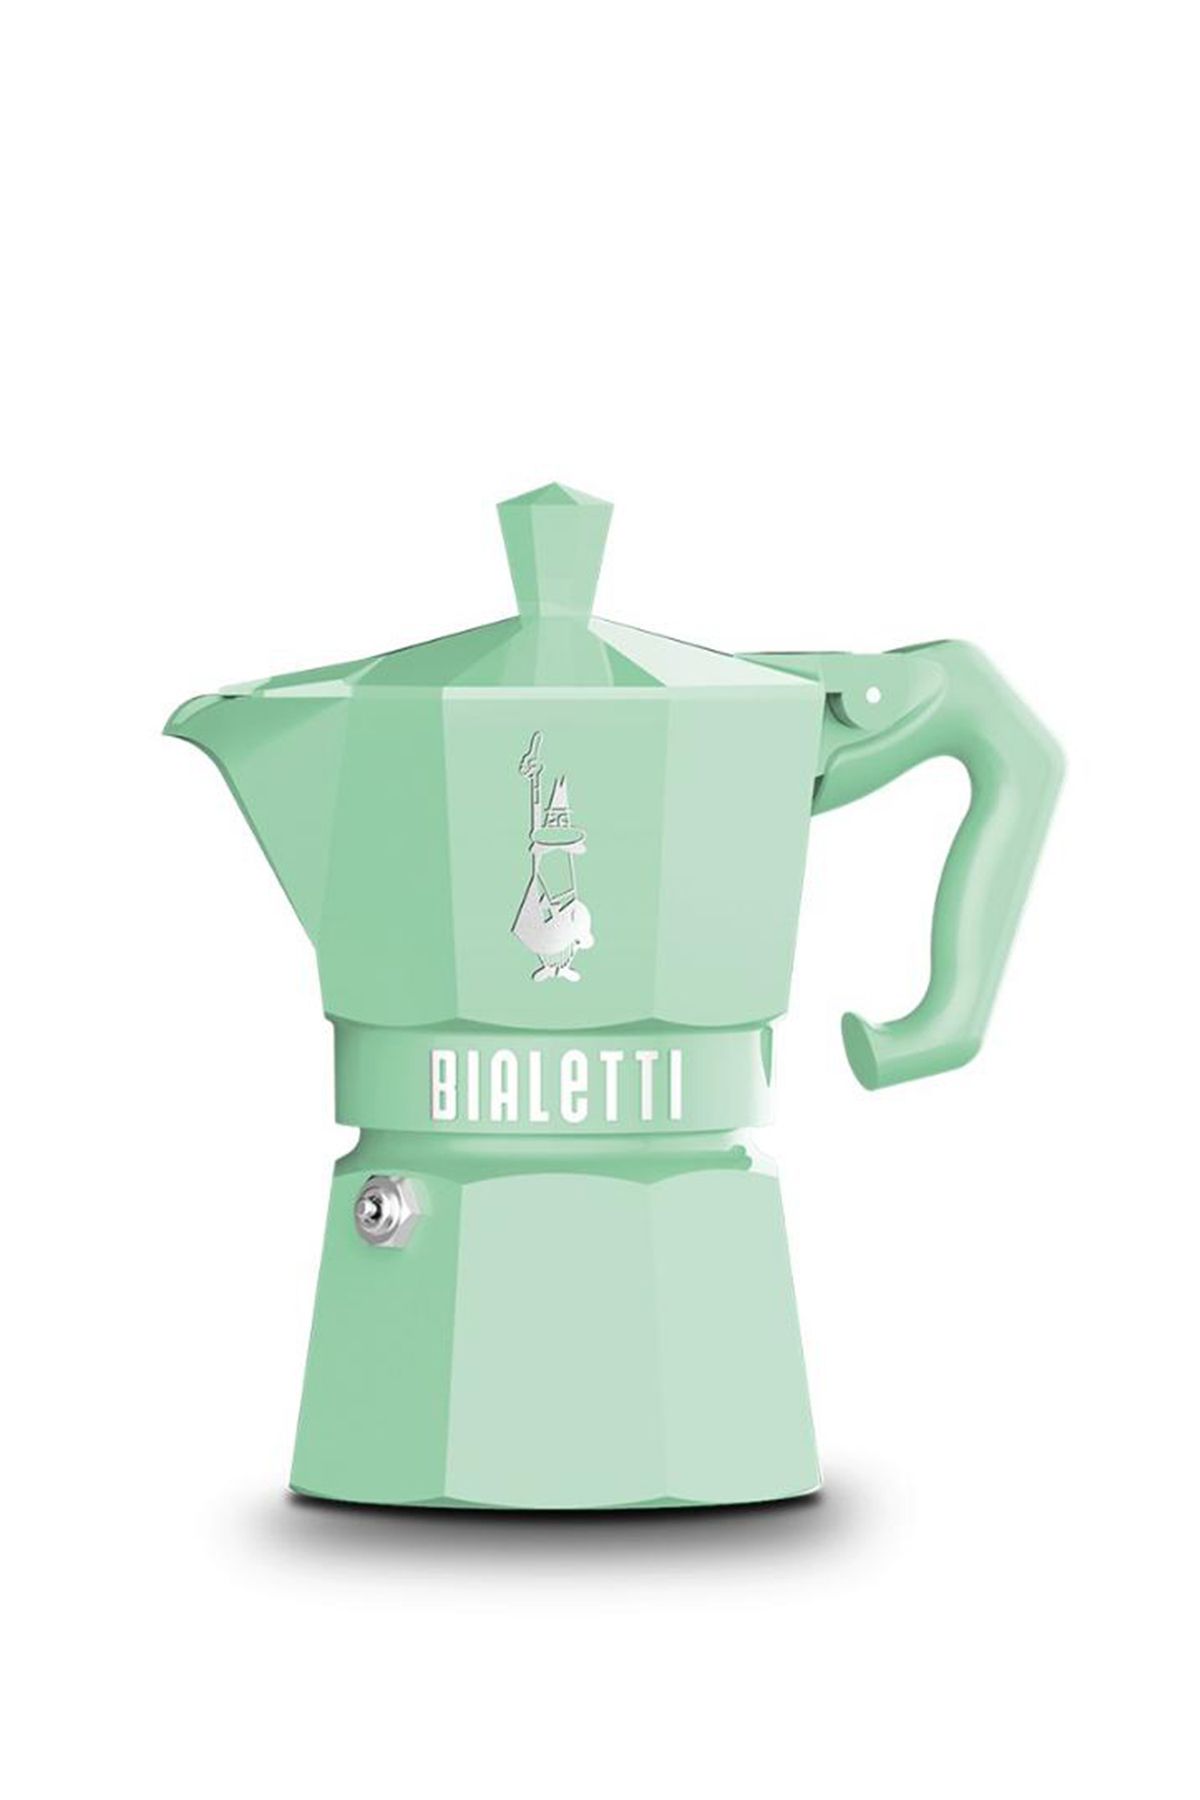 Bialetti Express Exclusive Yeşil 6 Cup Moka